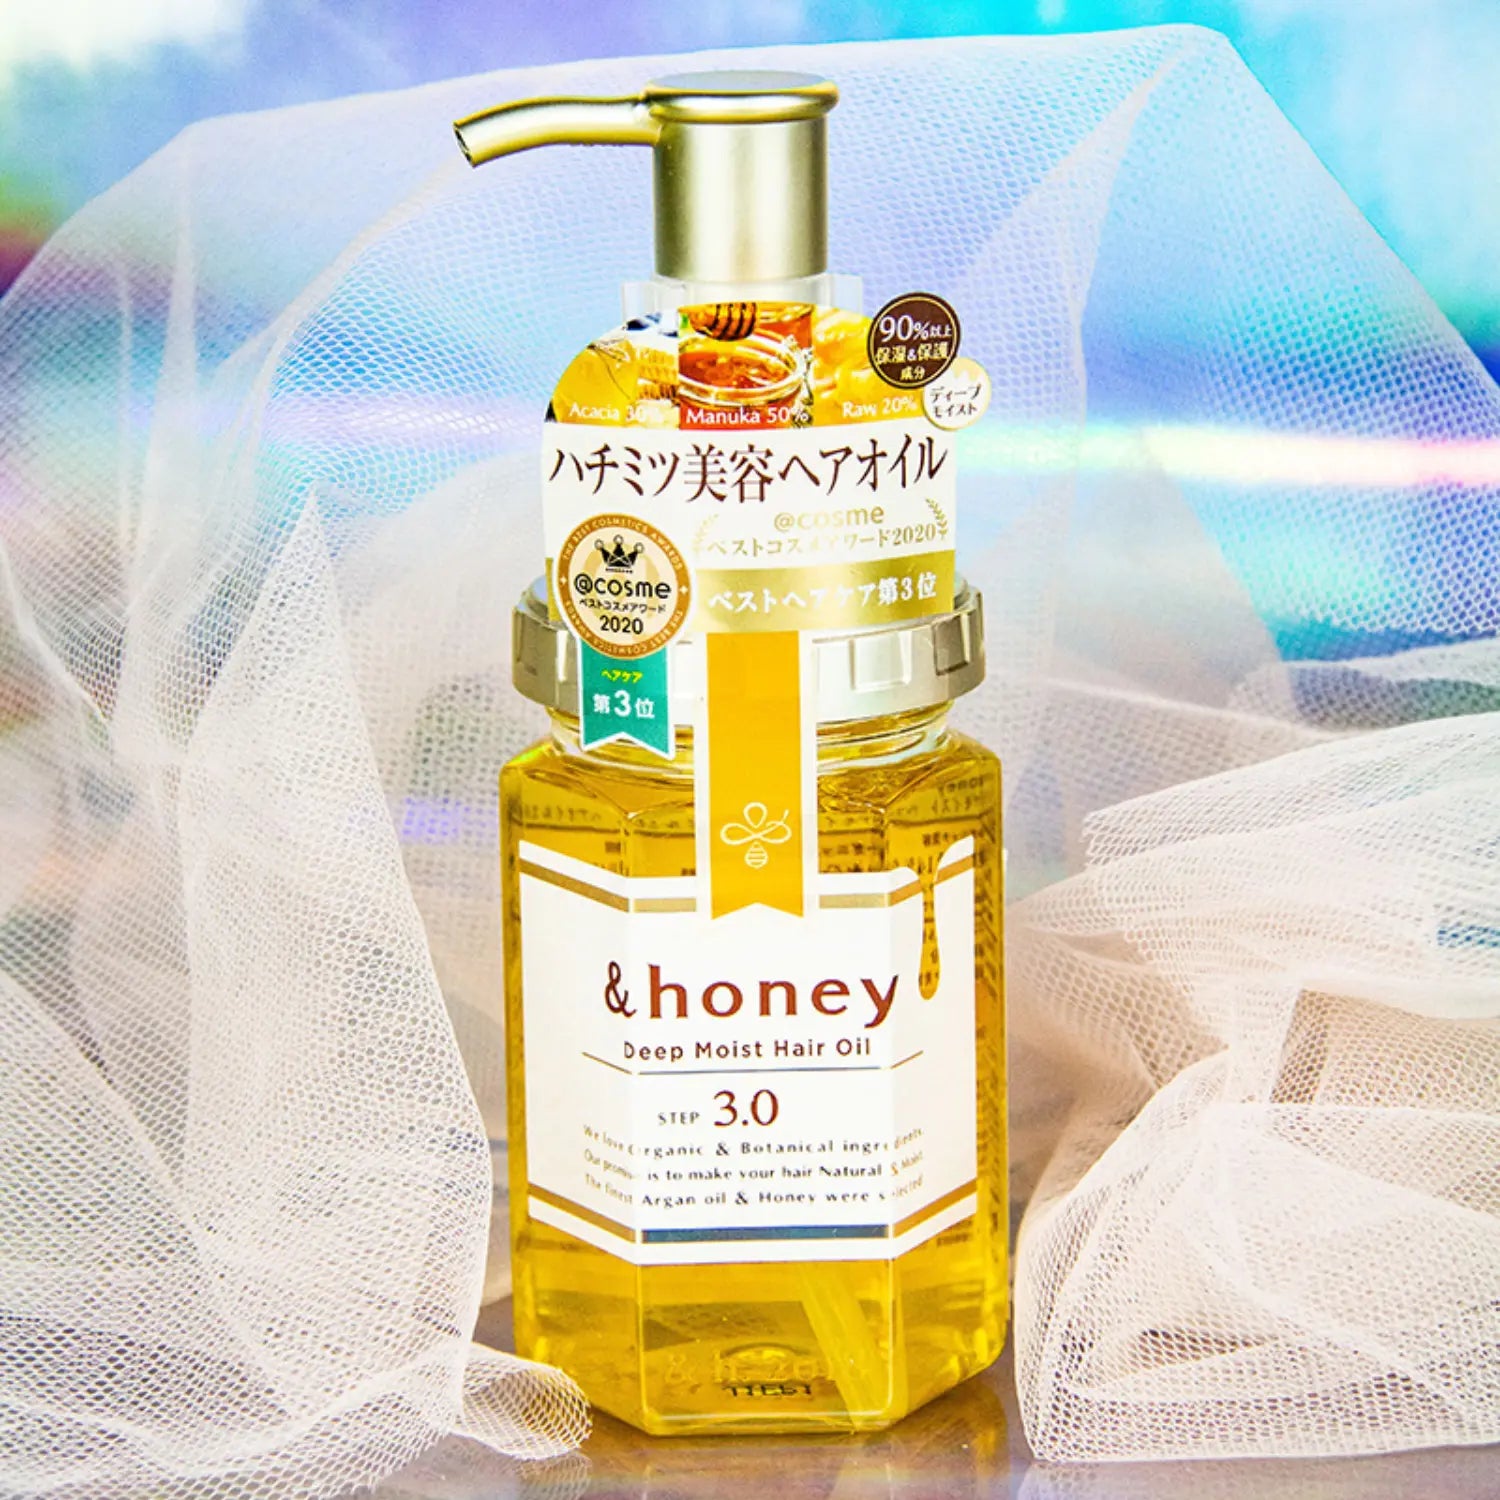 & Honey Deep Moist Hair Oil 100ml - Buy Me Japan